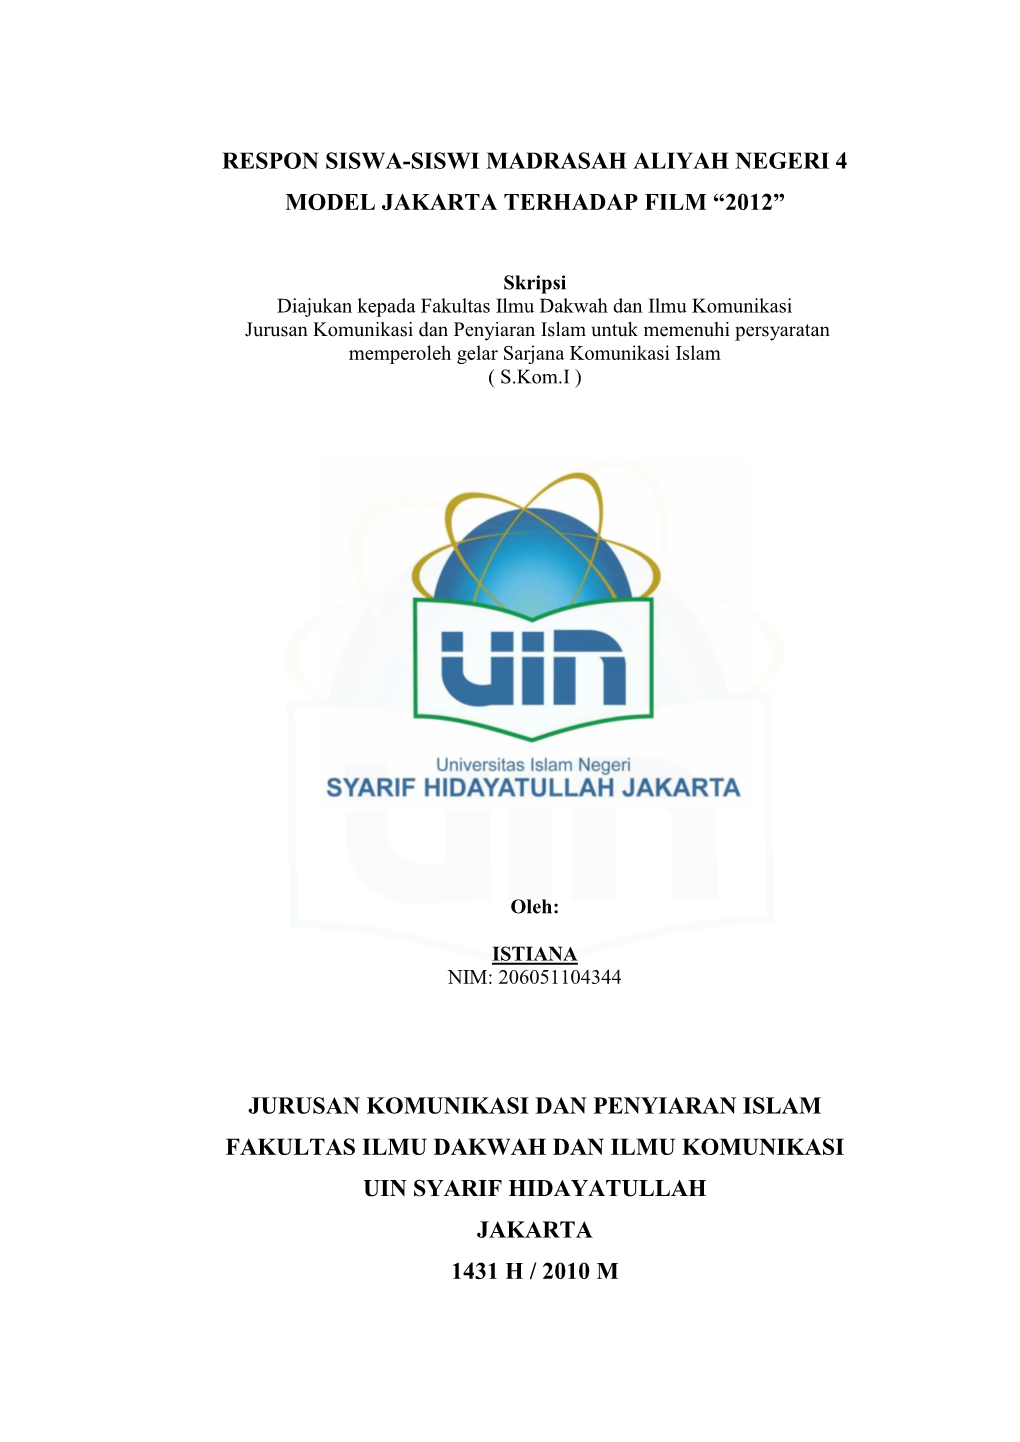 Respon Siswa-Siswi Madrasah Aliyah Negeri 4 Model Jakarta Terhadap Film “2012”